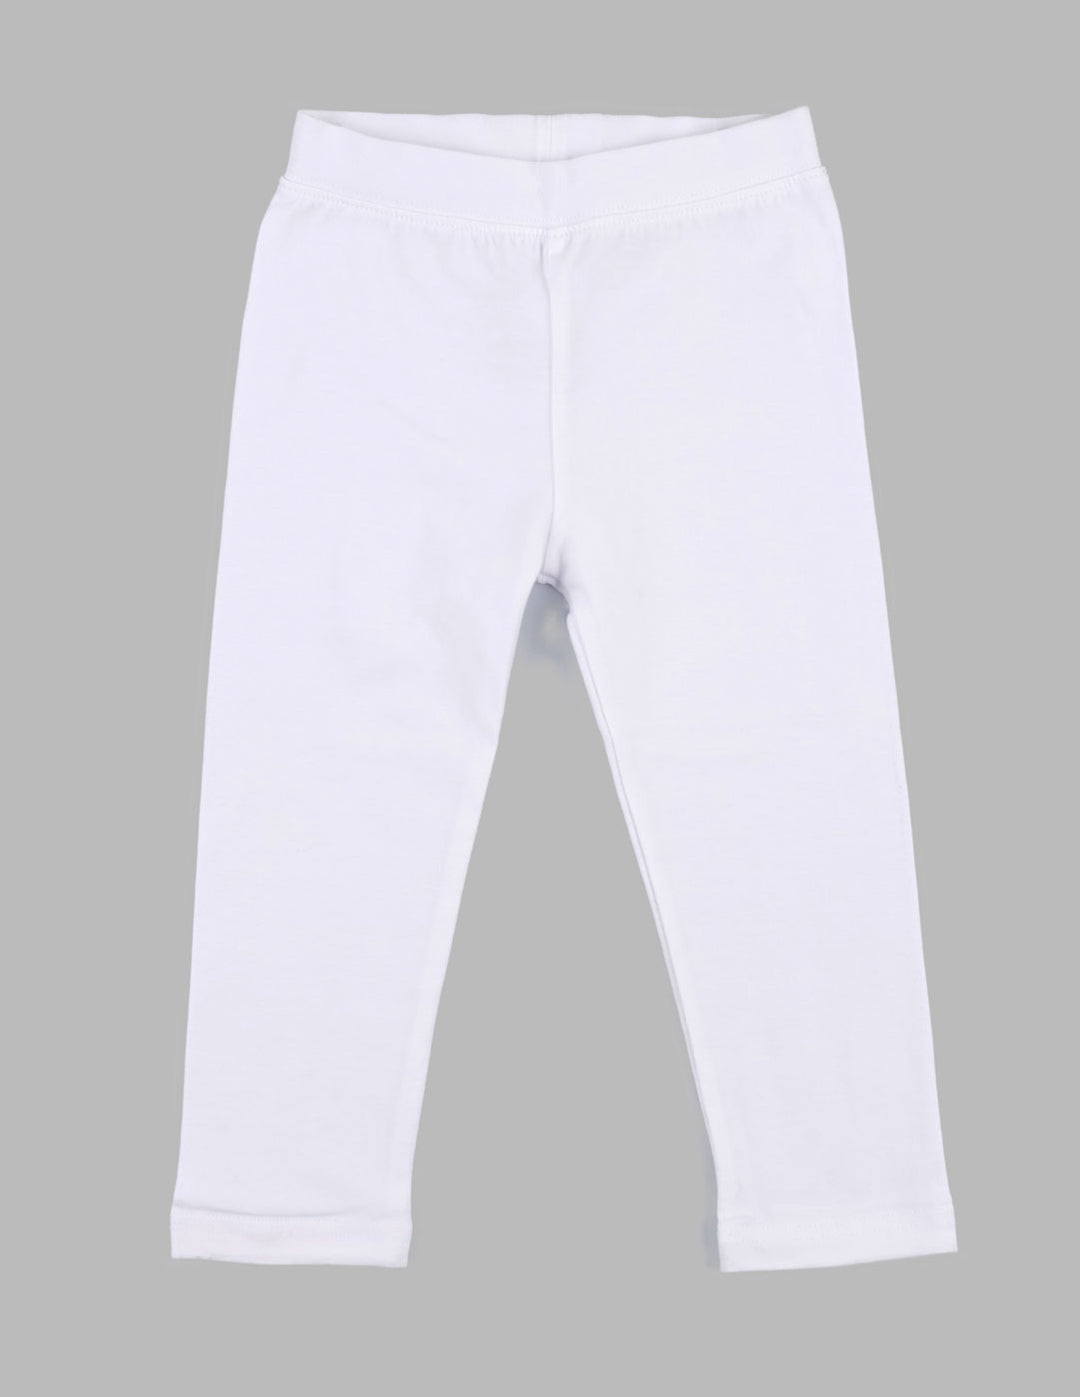 Leveret Kids Drawstring Pants Cotton White 6 Year : Target